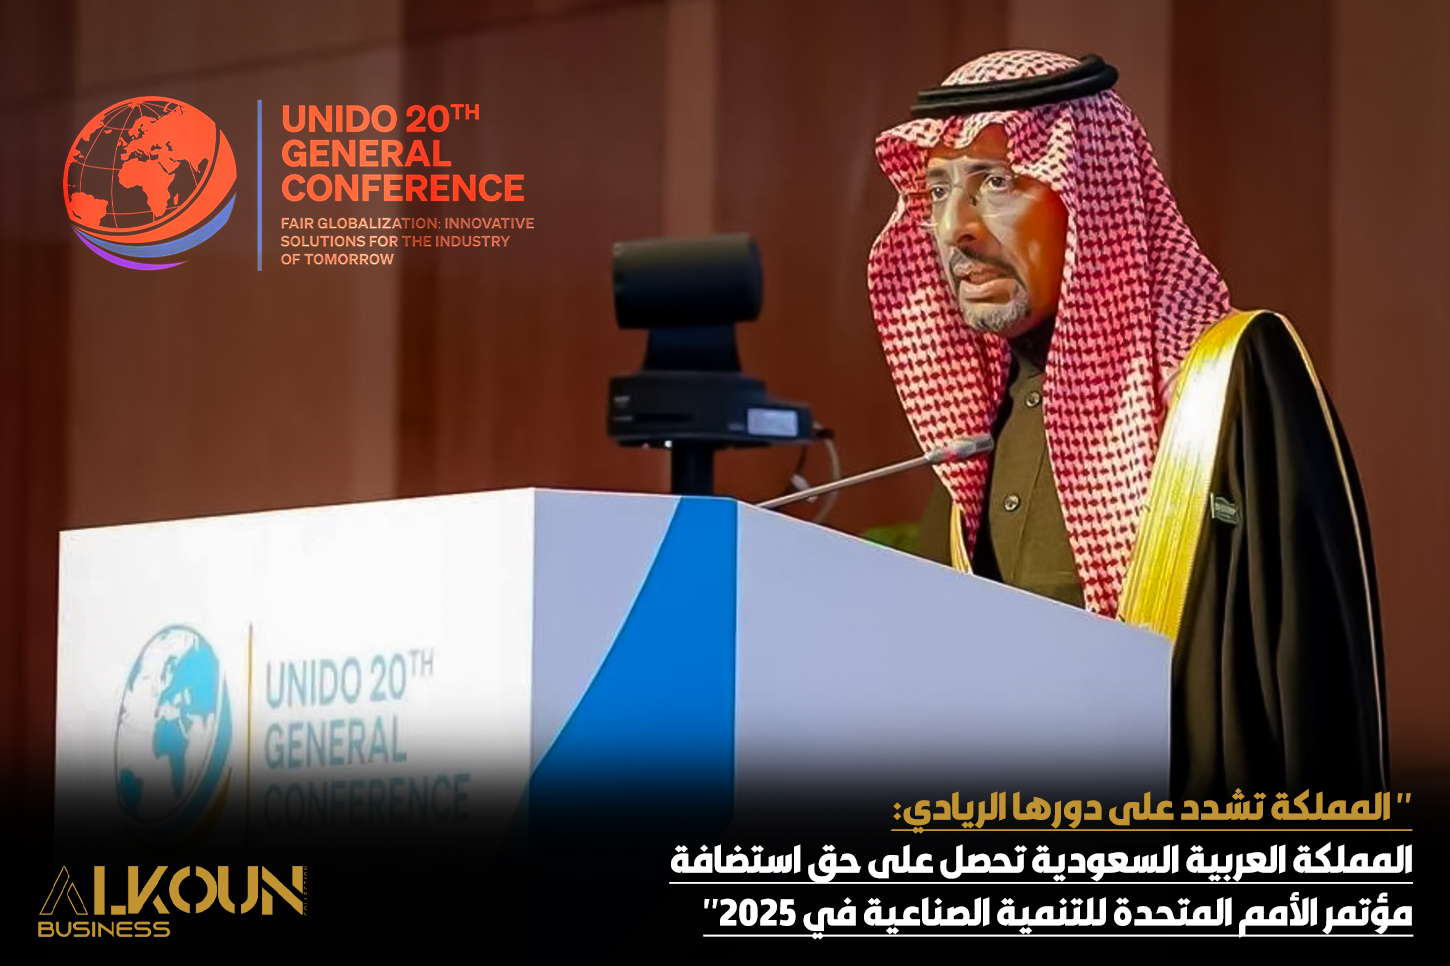 " المملكة تشدد على دورها الريادي: المملكة العربية السعودية تحصل على حق استضافة مؤتمر الأمم المتحدة للتنمية الصناعية في 2025"